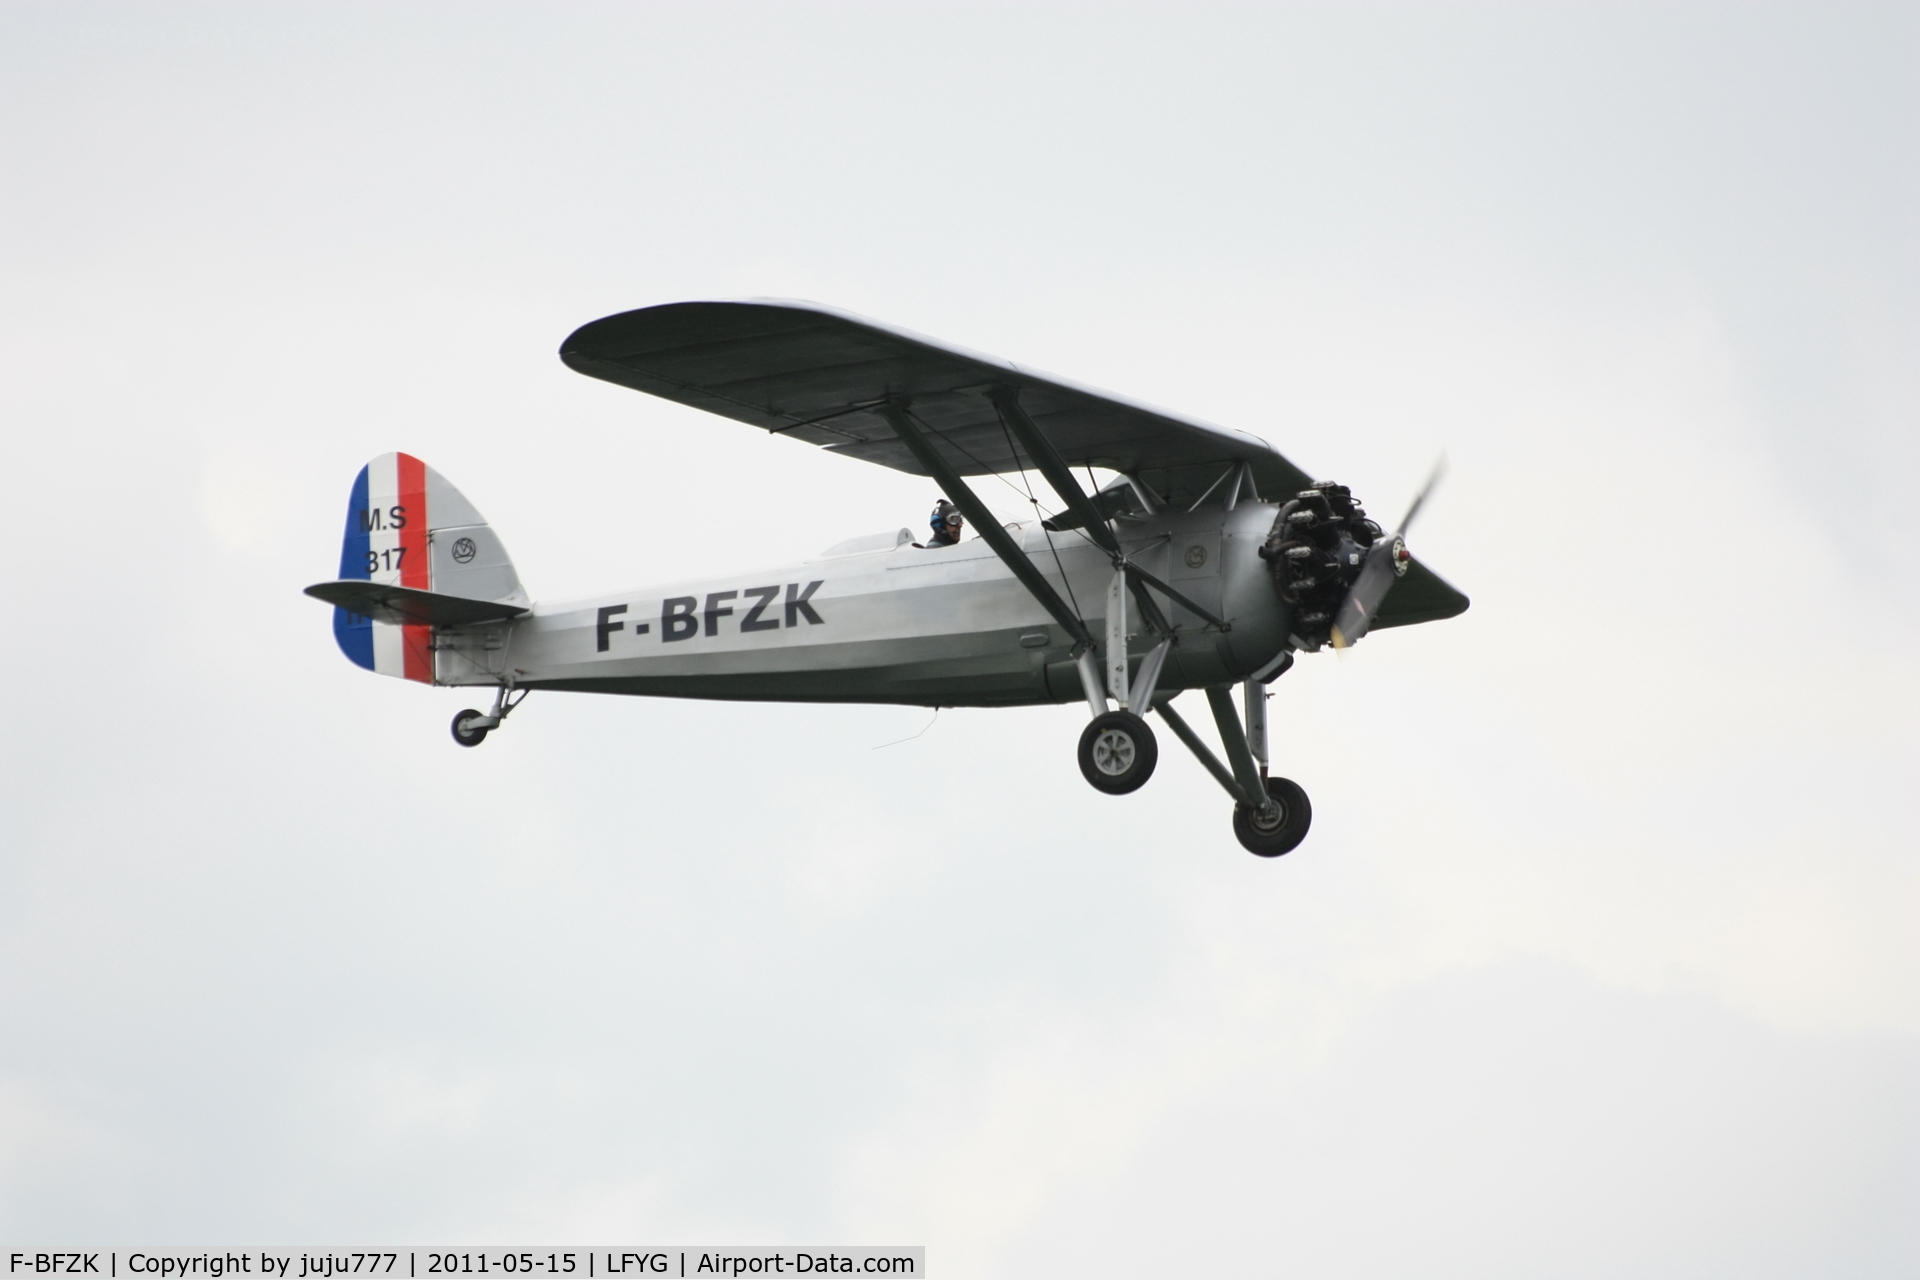 F-BFZK, Morane-Saulnier MS.317 C/N 271, on display at Cambrai Niergnies for TigerMeet